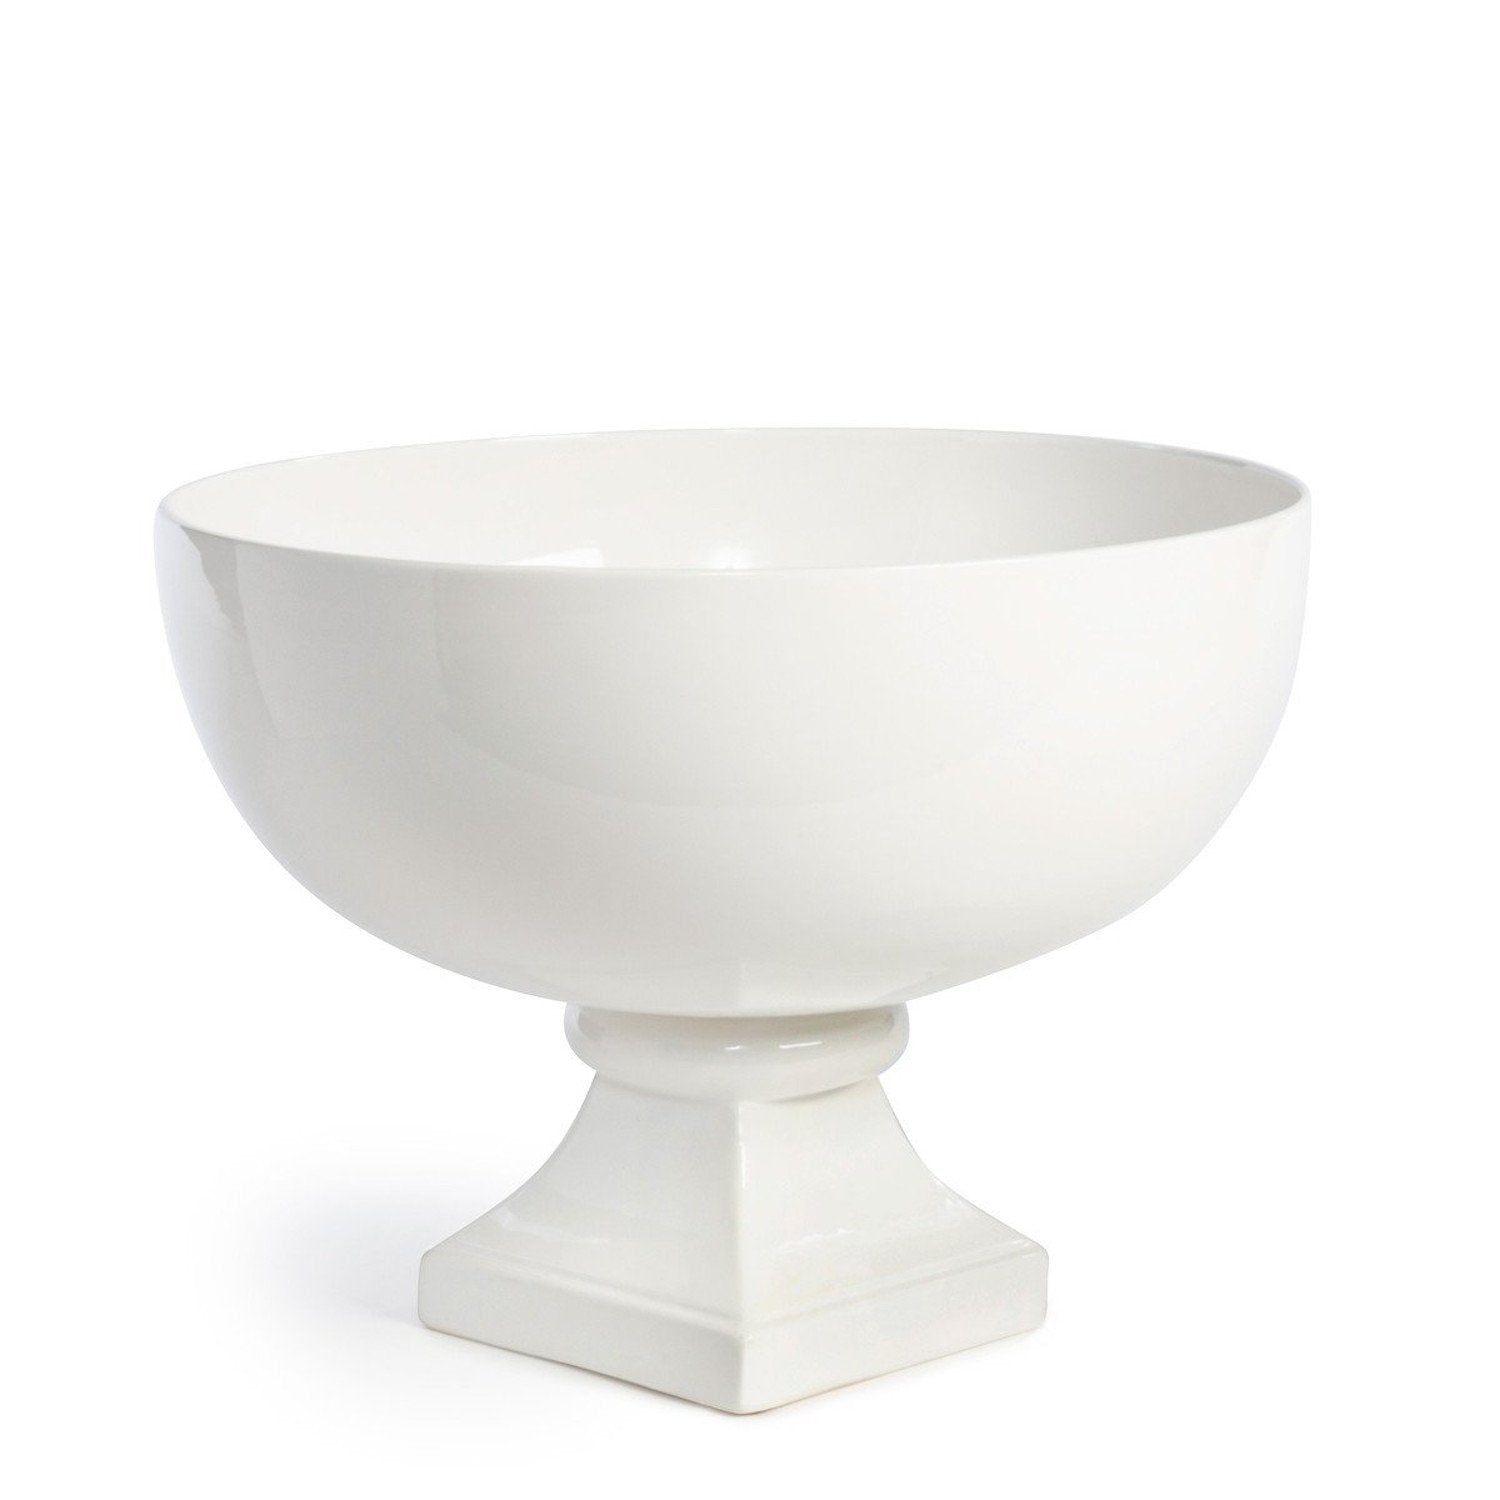 European Ceramic Pedestal Bowl Large